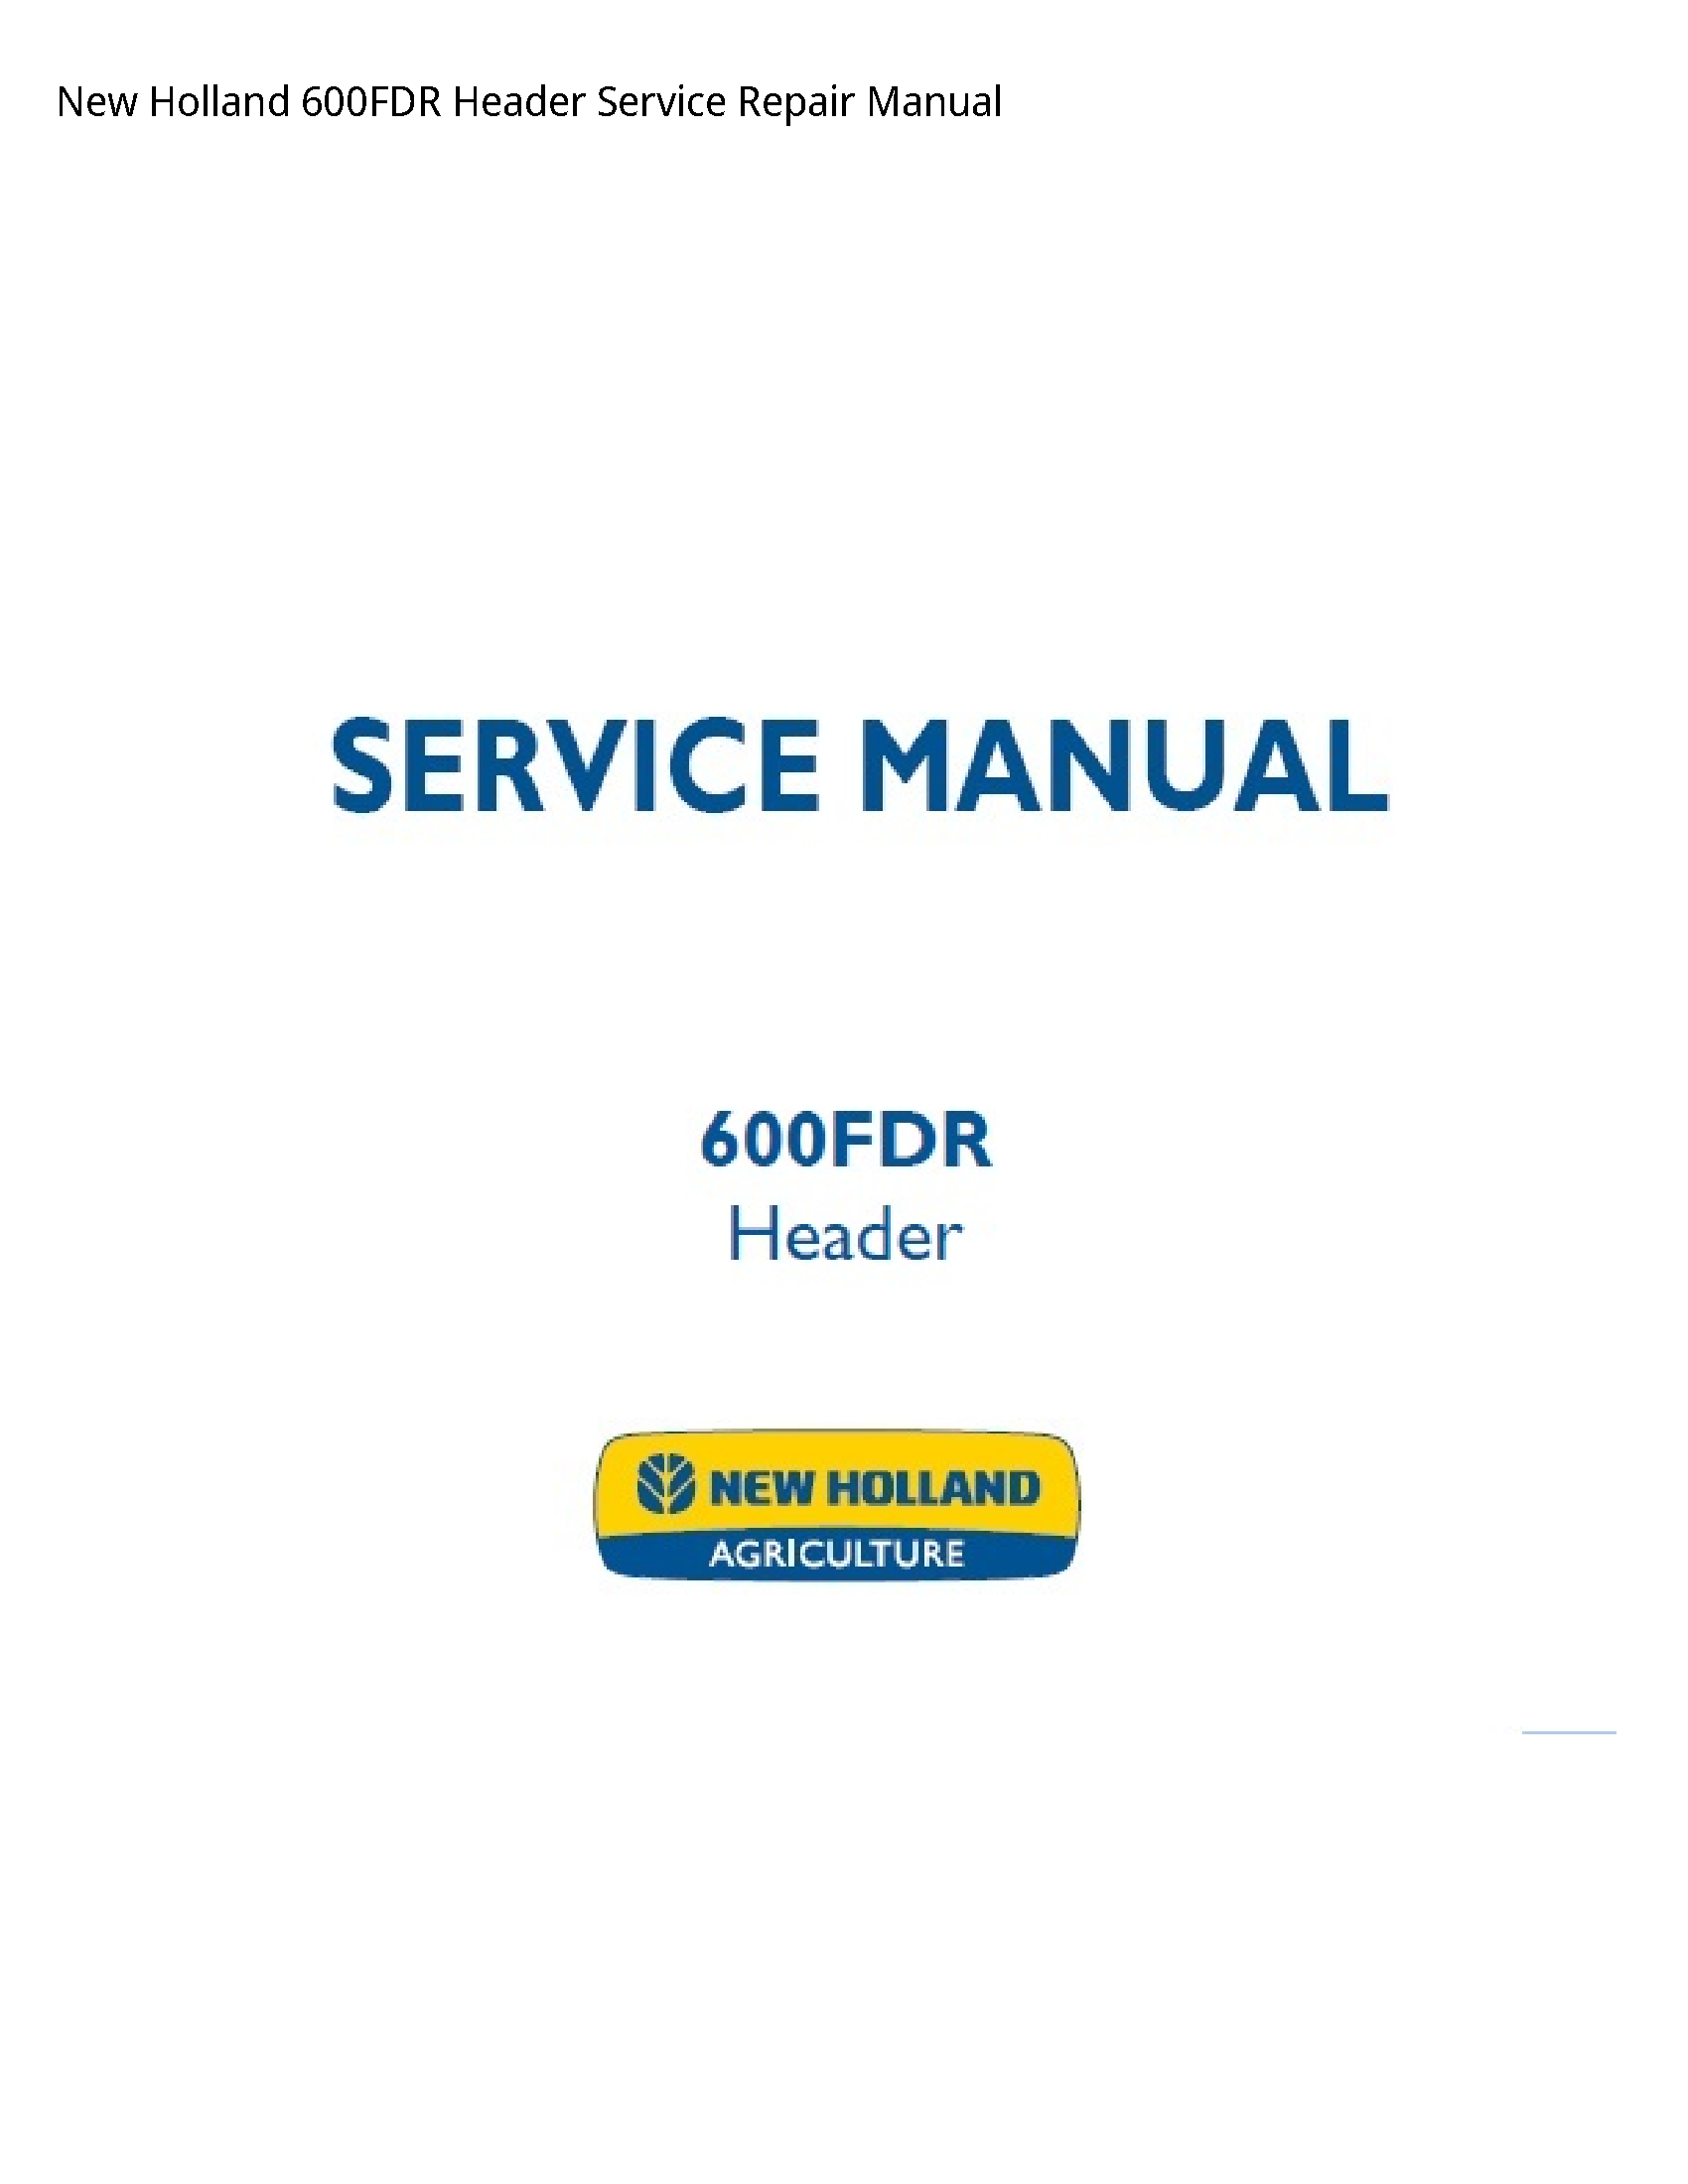 New Holland 600FDR Header manual